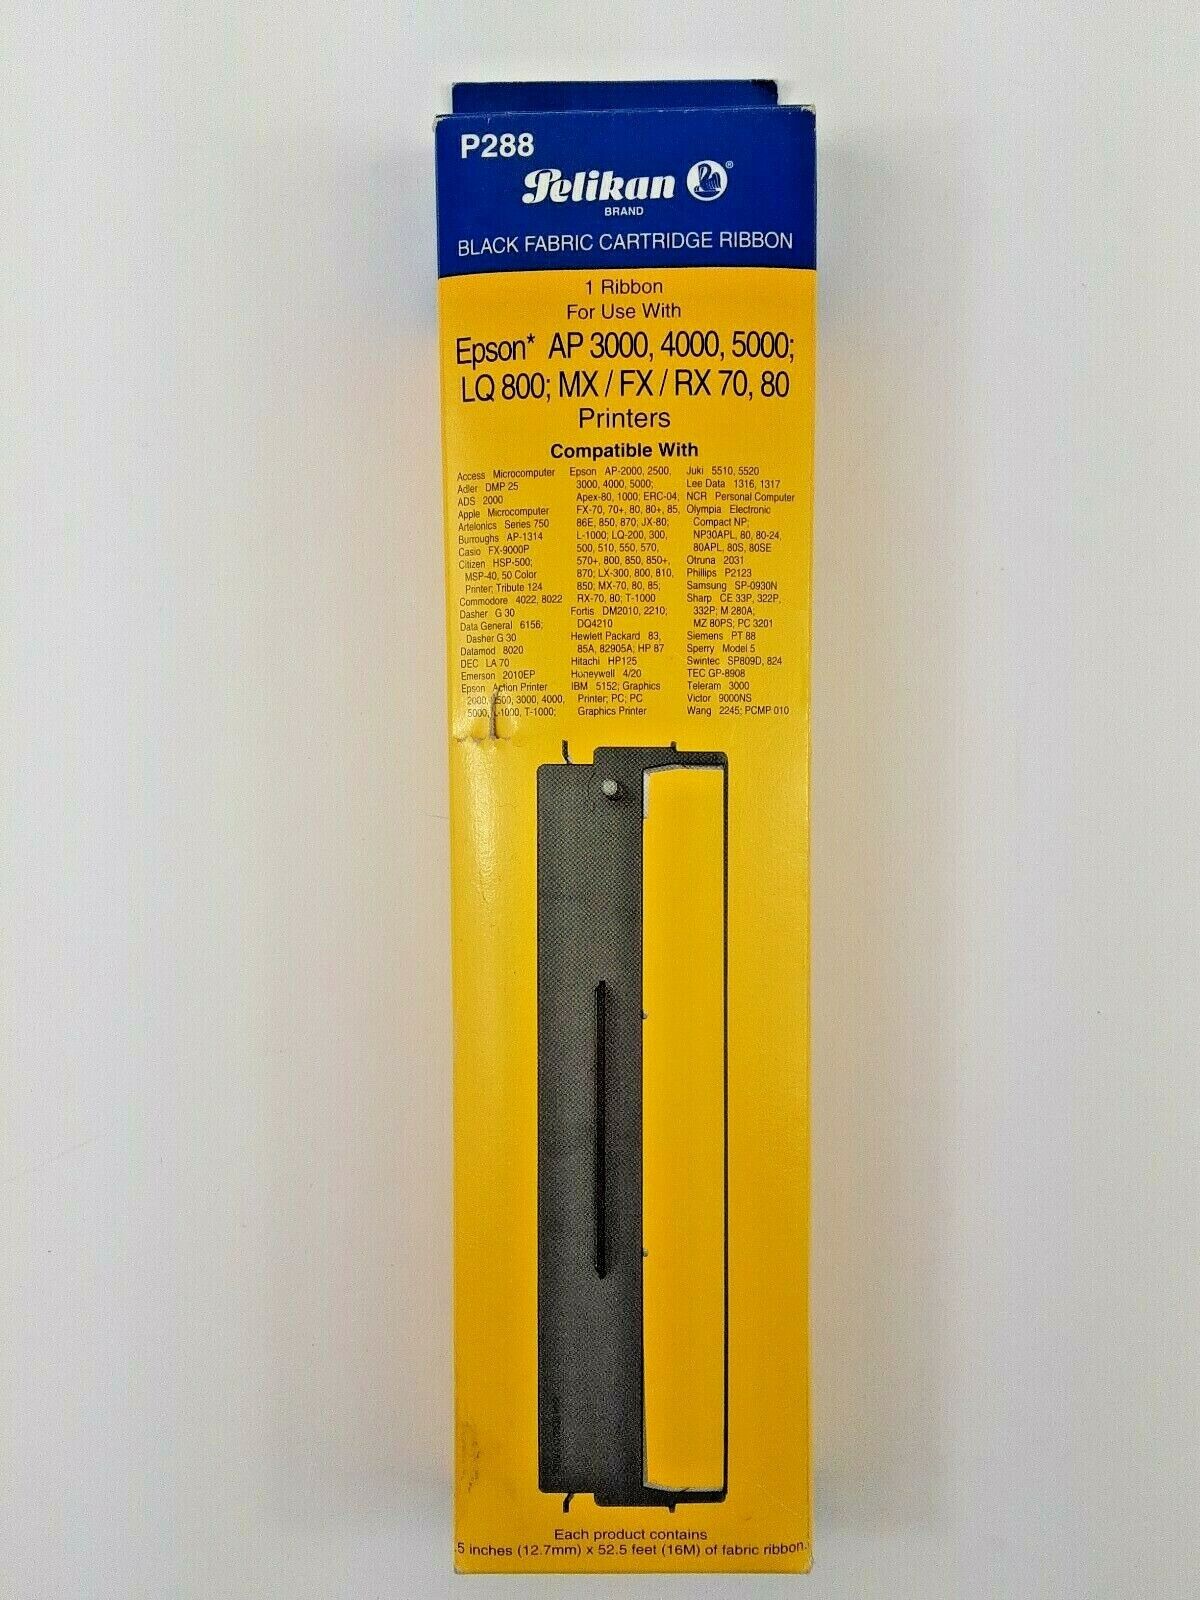 NEW- Peilkan Black Fabric Cartridge Ribbons   P288 